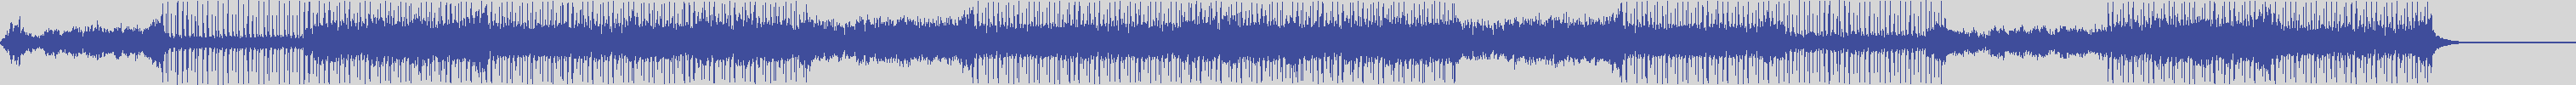 noclouds_chillout [NOC080] Low Champ - Bark [Original Mix] audio wave form